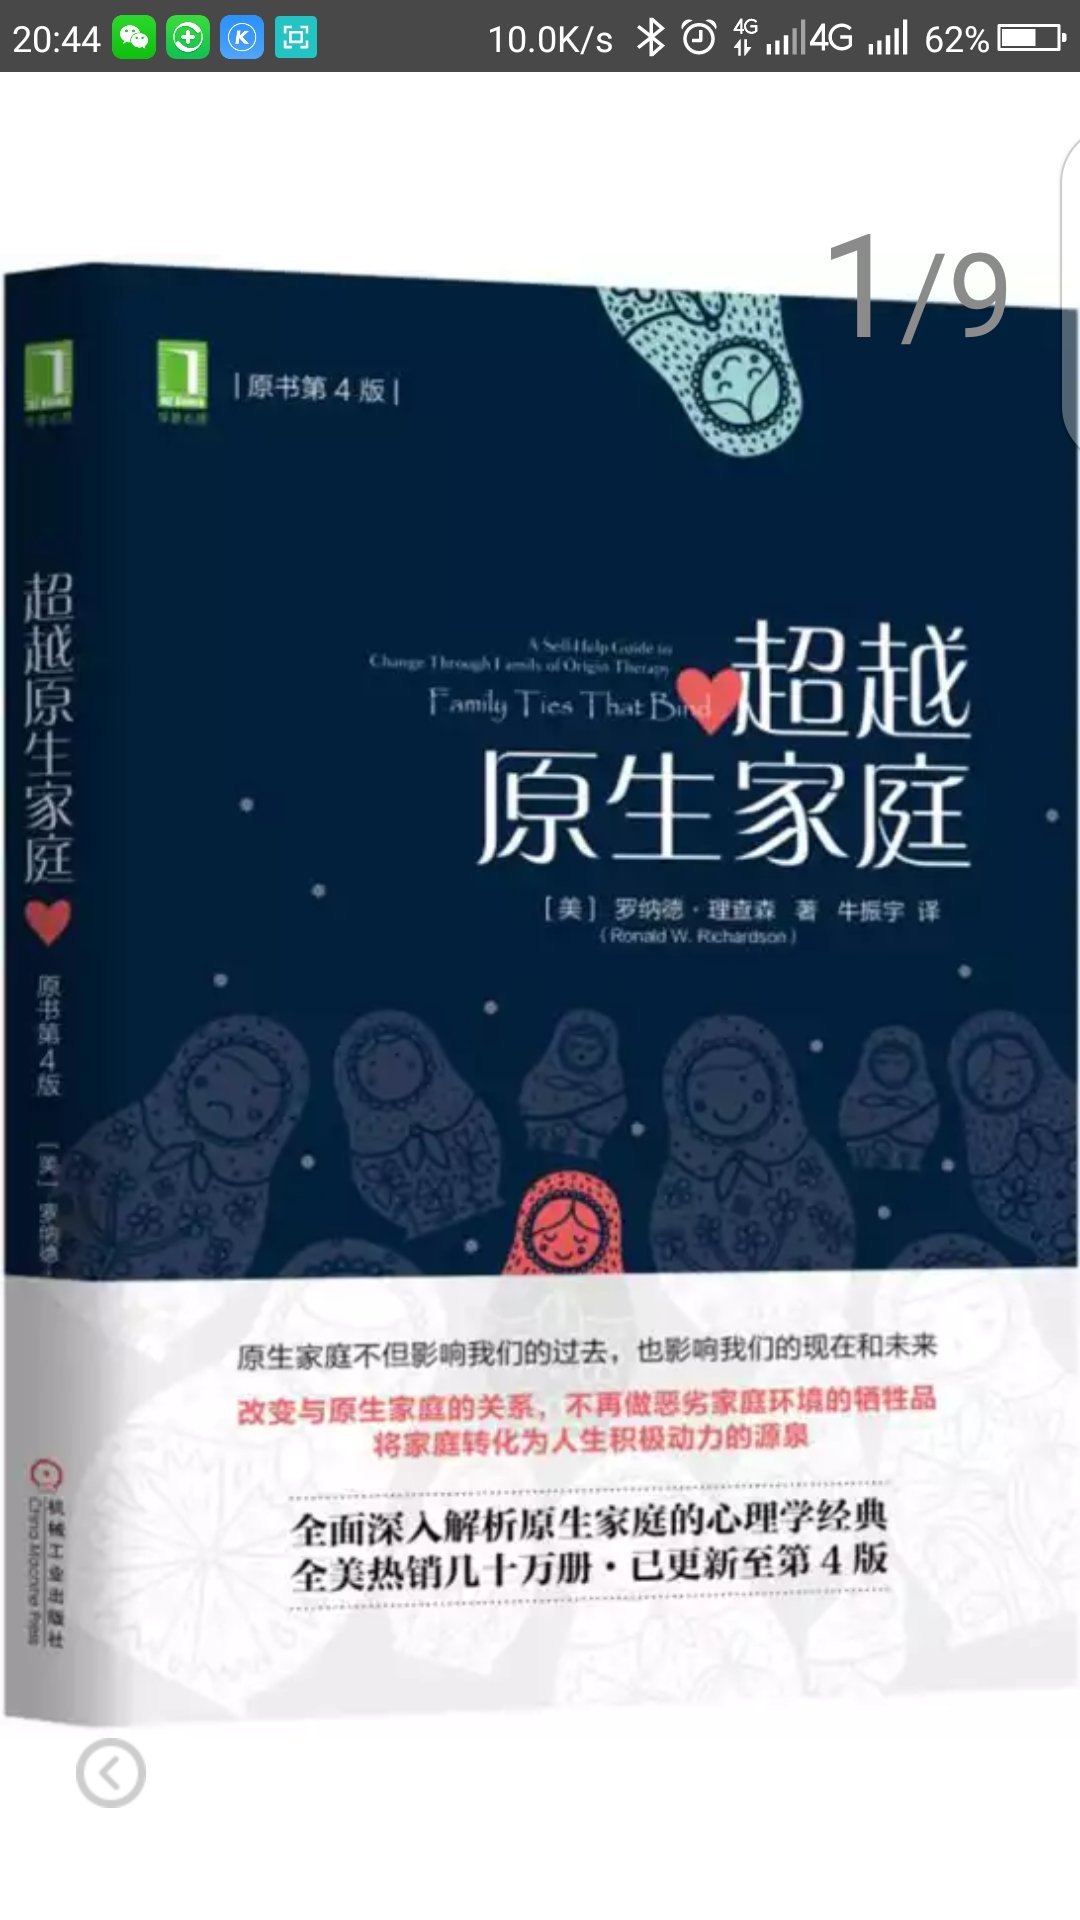 袁珂先生专为读者写就的中国神话简明读本，让我们重温神话中那些“儿童时代的天真”，感受中国神话“长久的魅力”